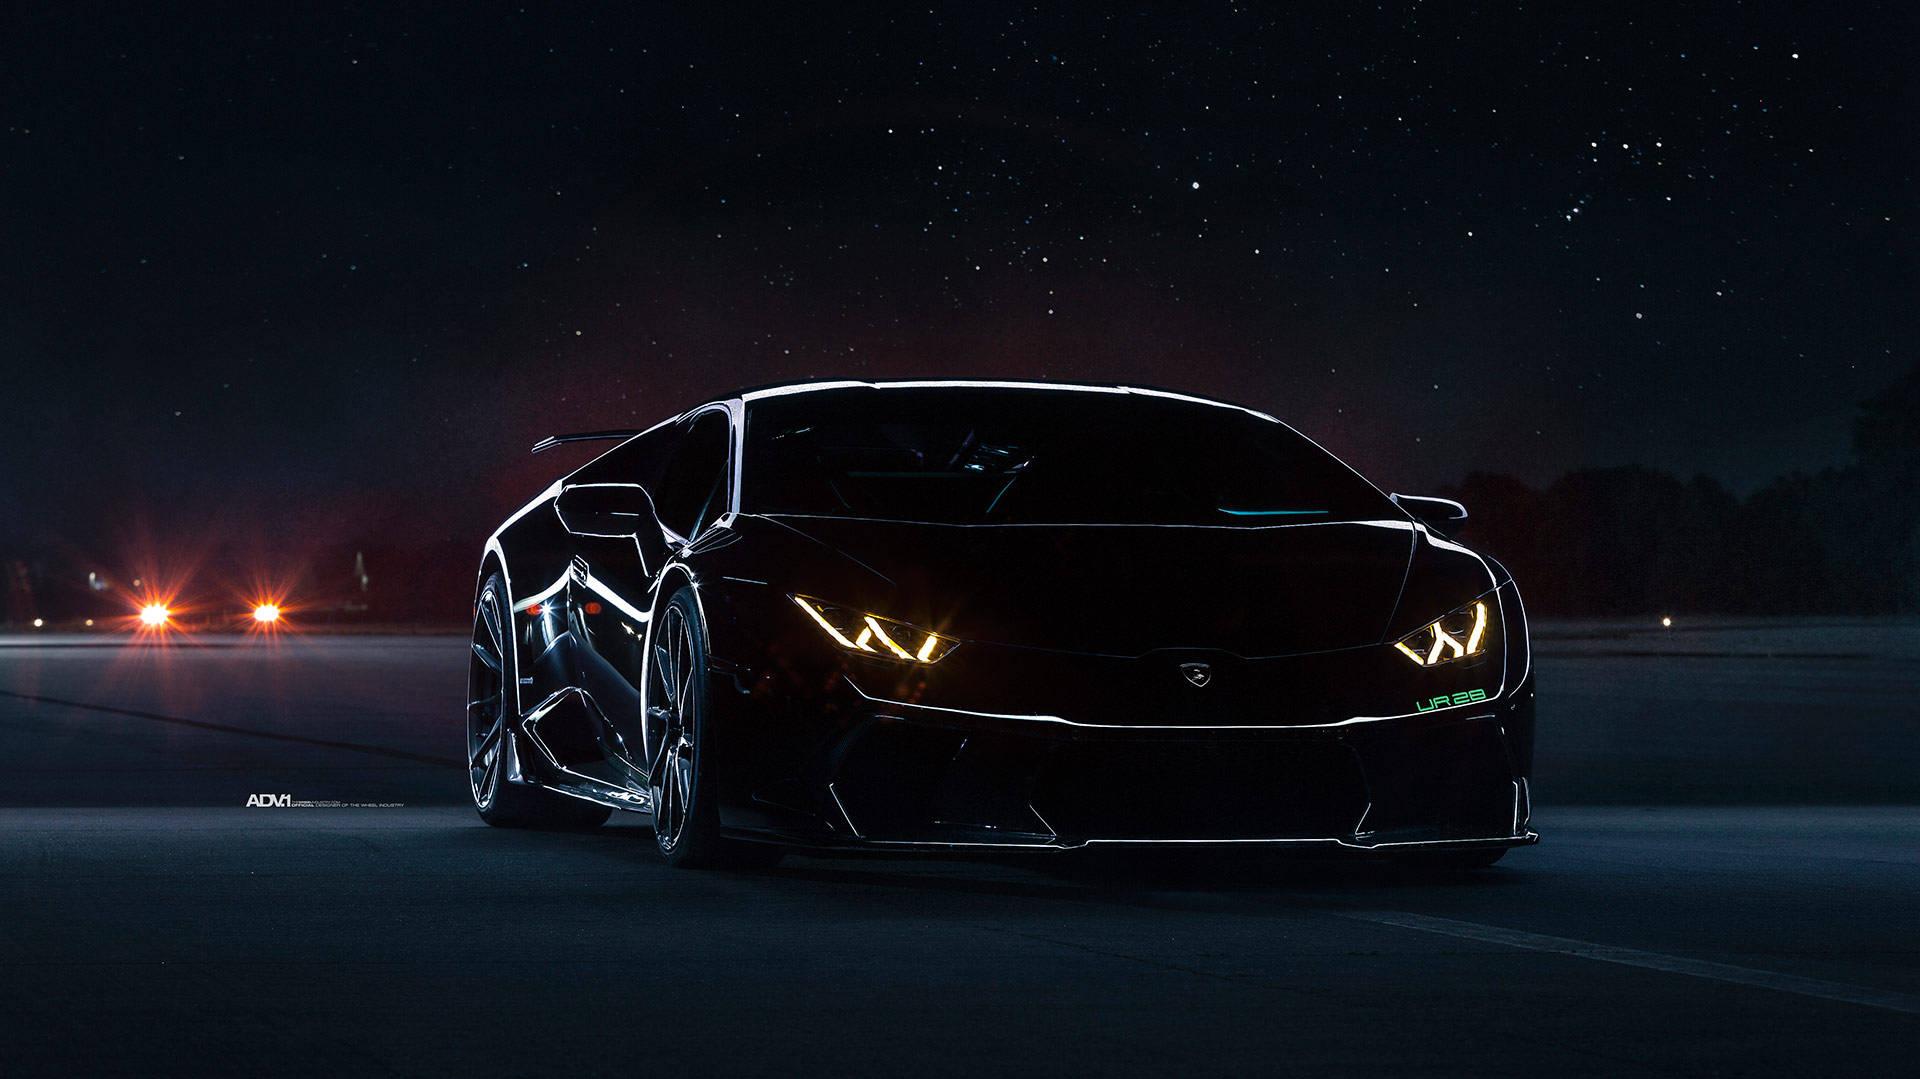 Nighttime Black Lamborghini Wallpaper